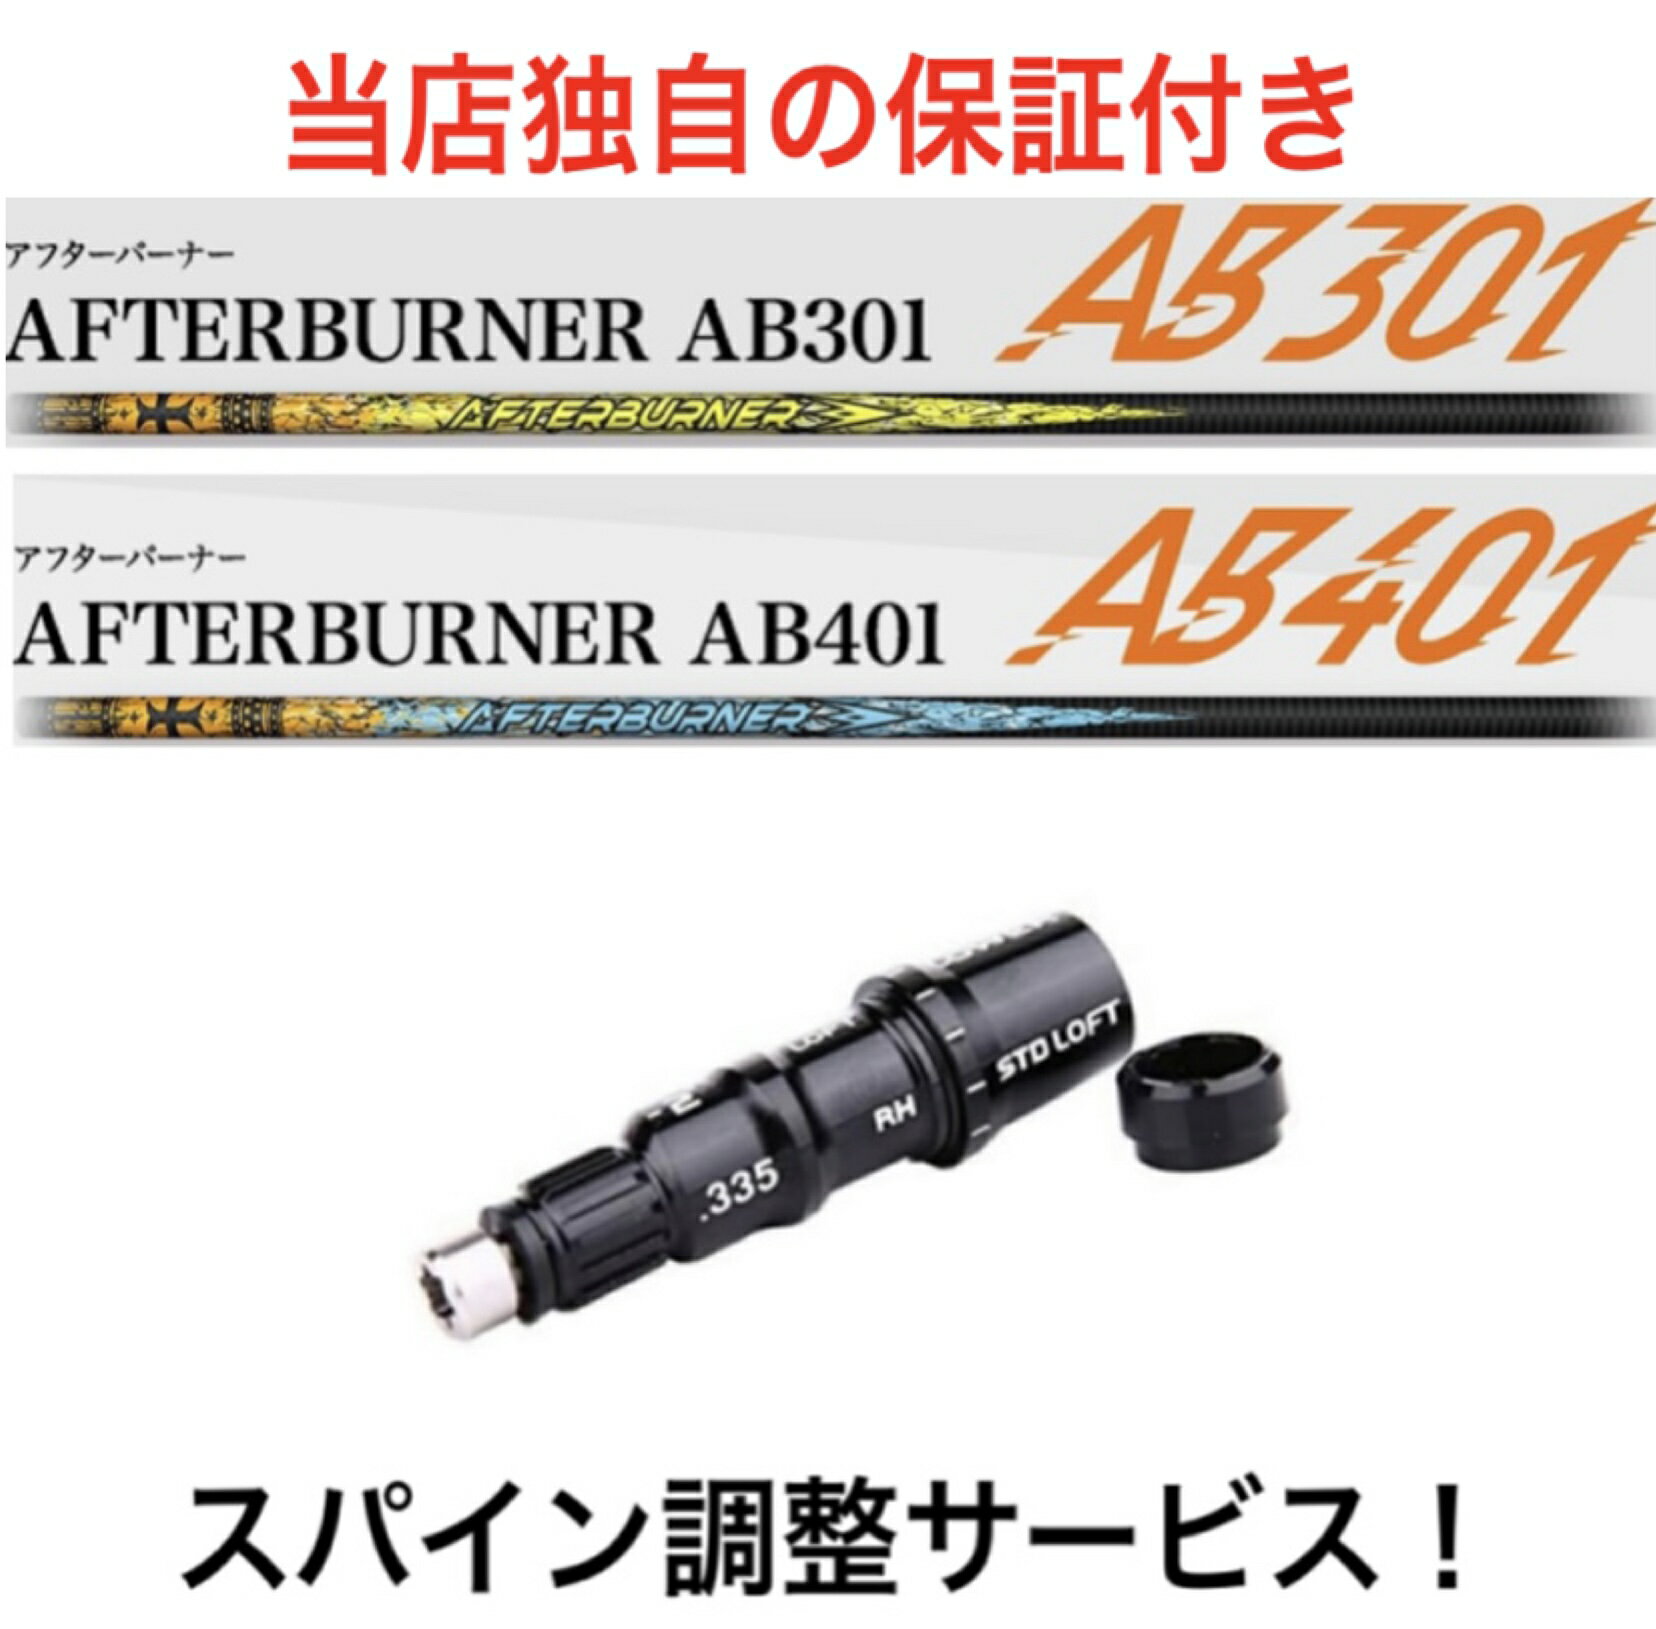 TM 【スパイン調整無料】TRPX アフターバーナー AB301